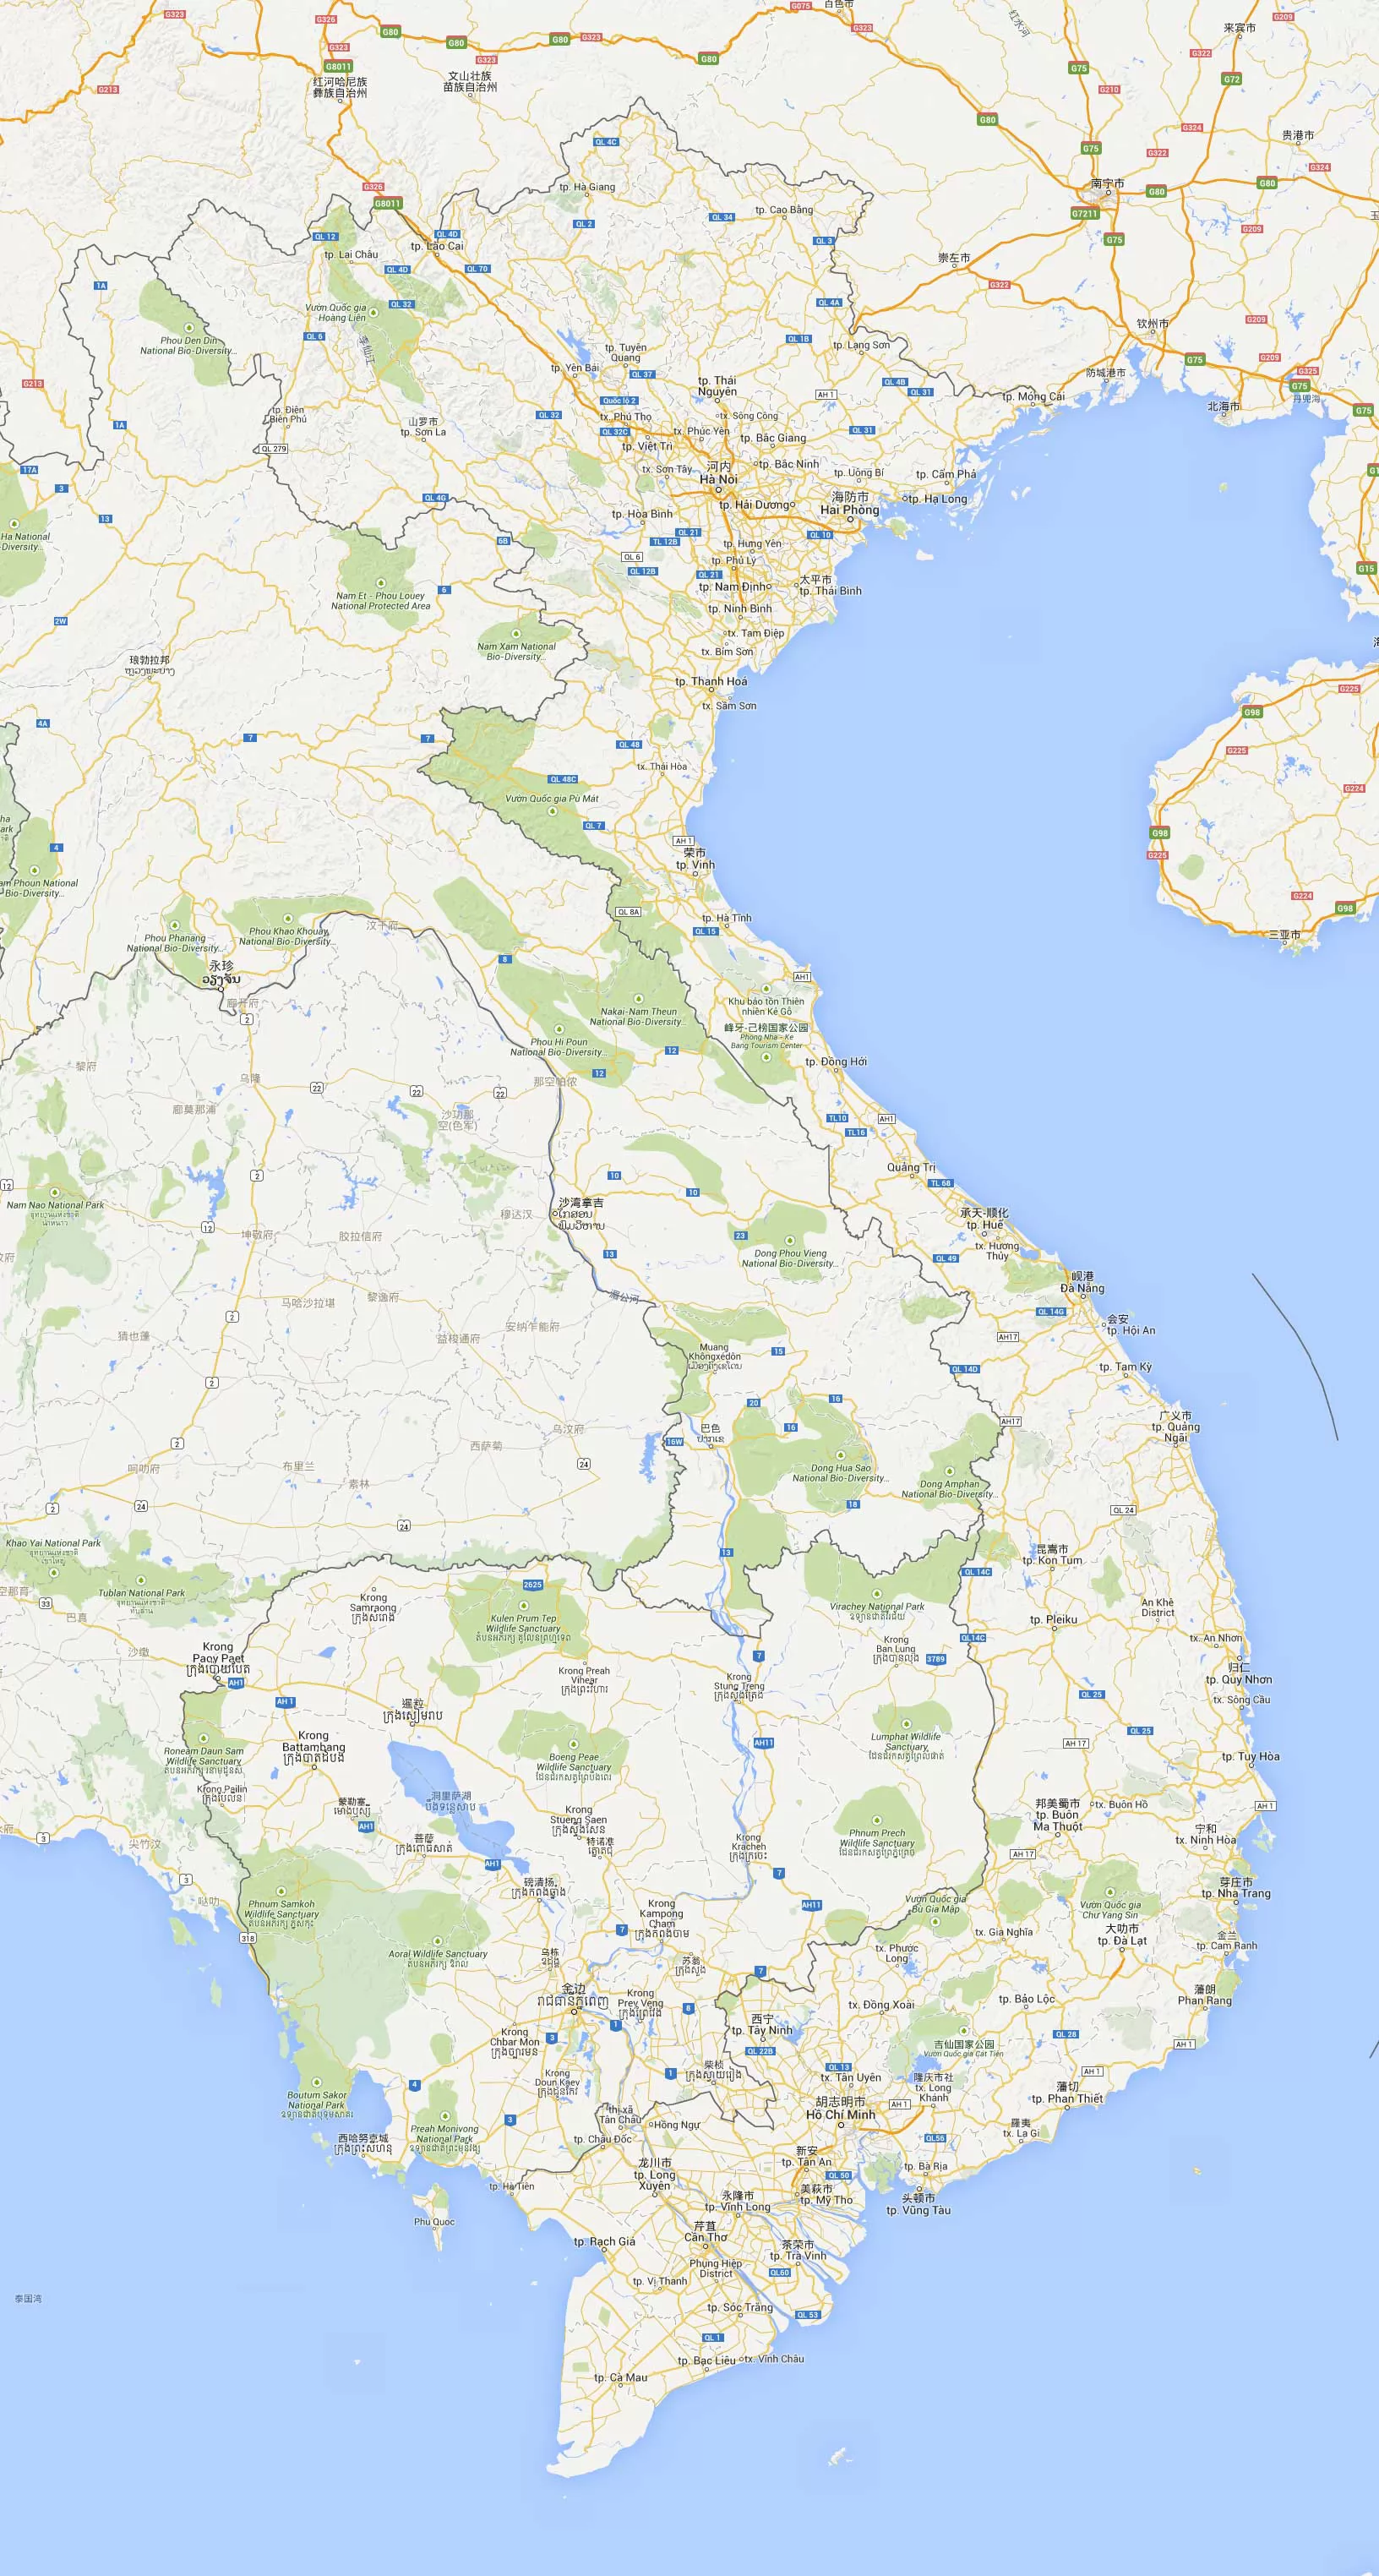 越南政区图 - 越南地图 - 地理教师网